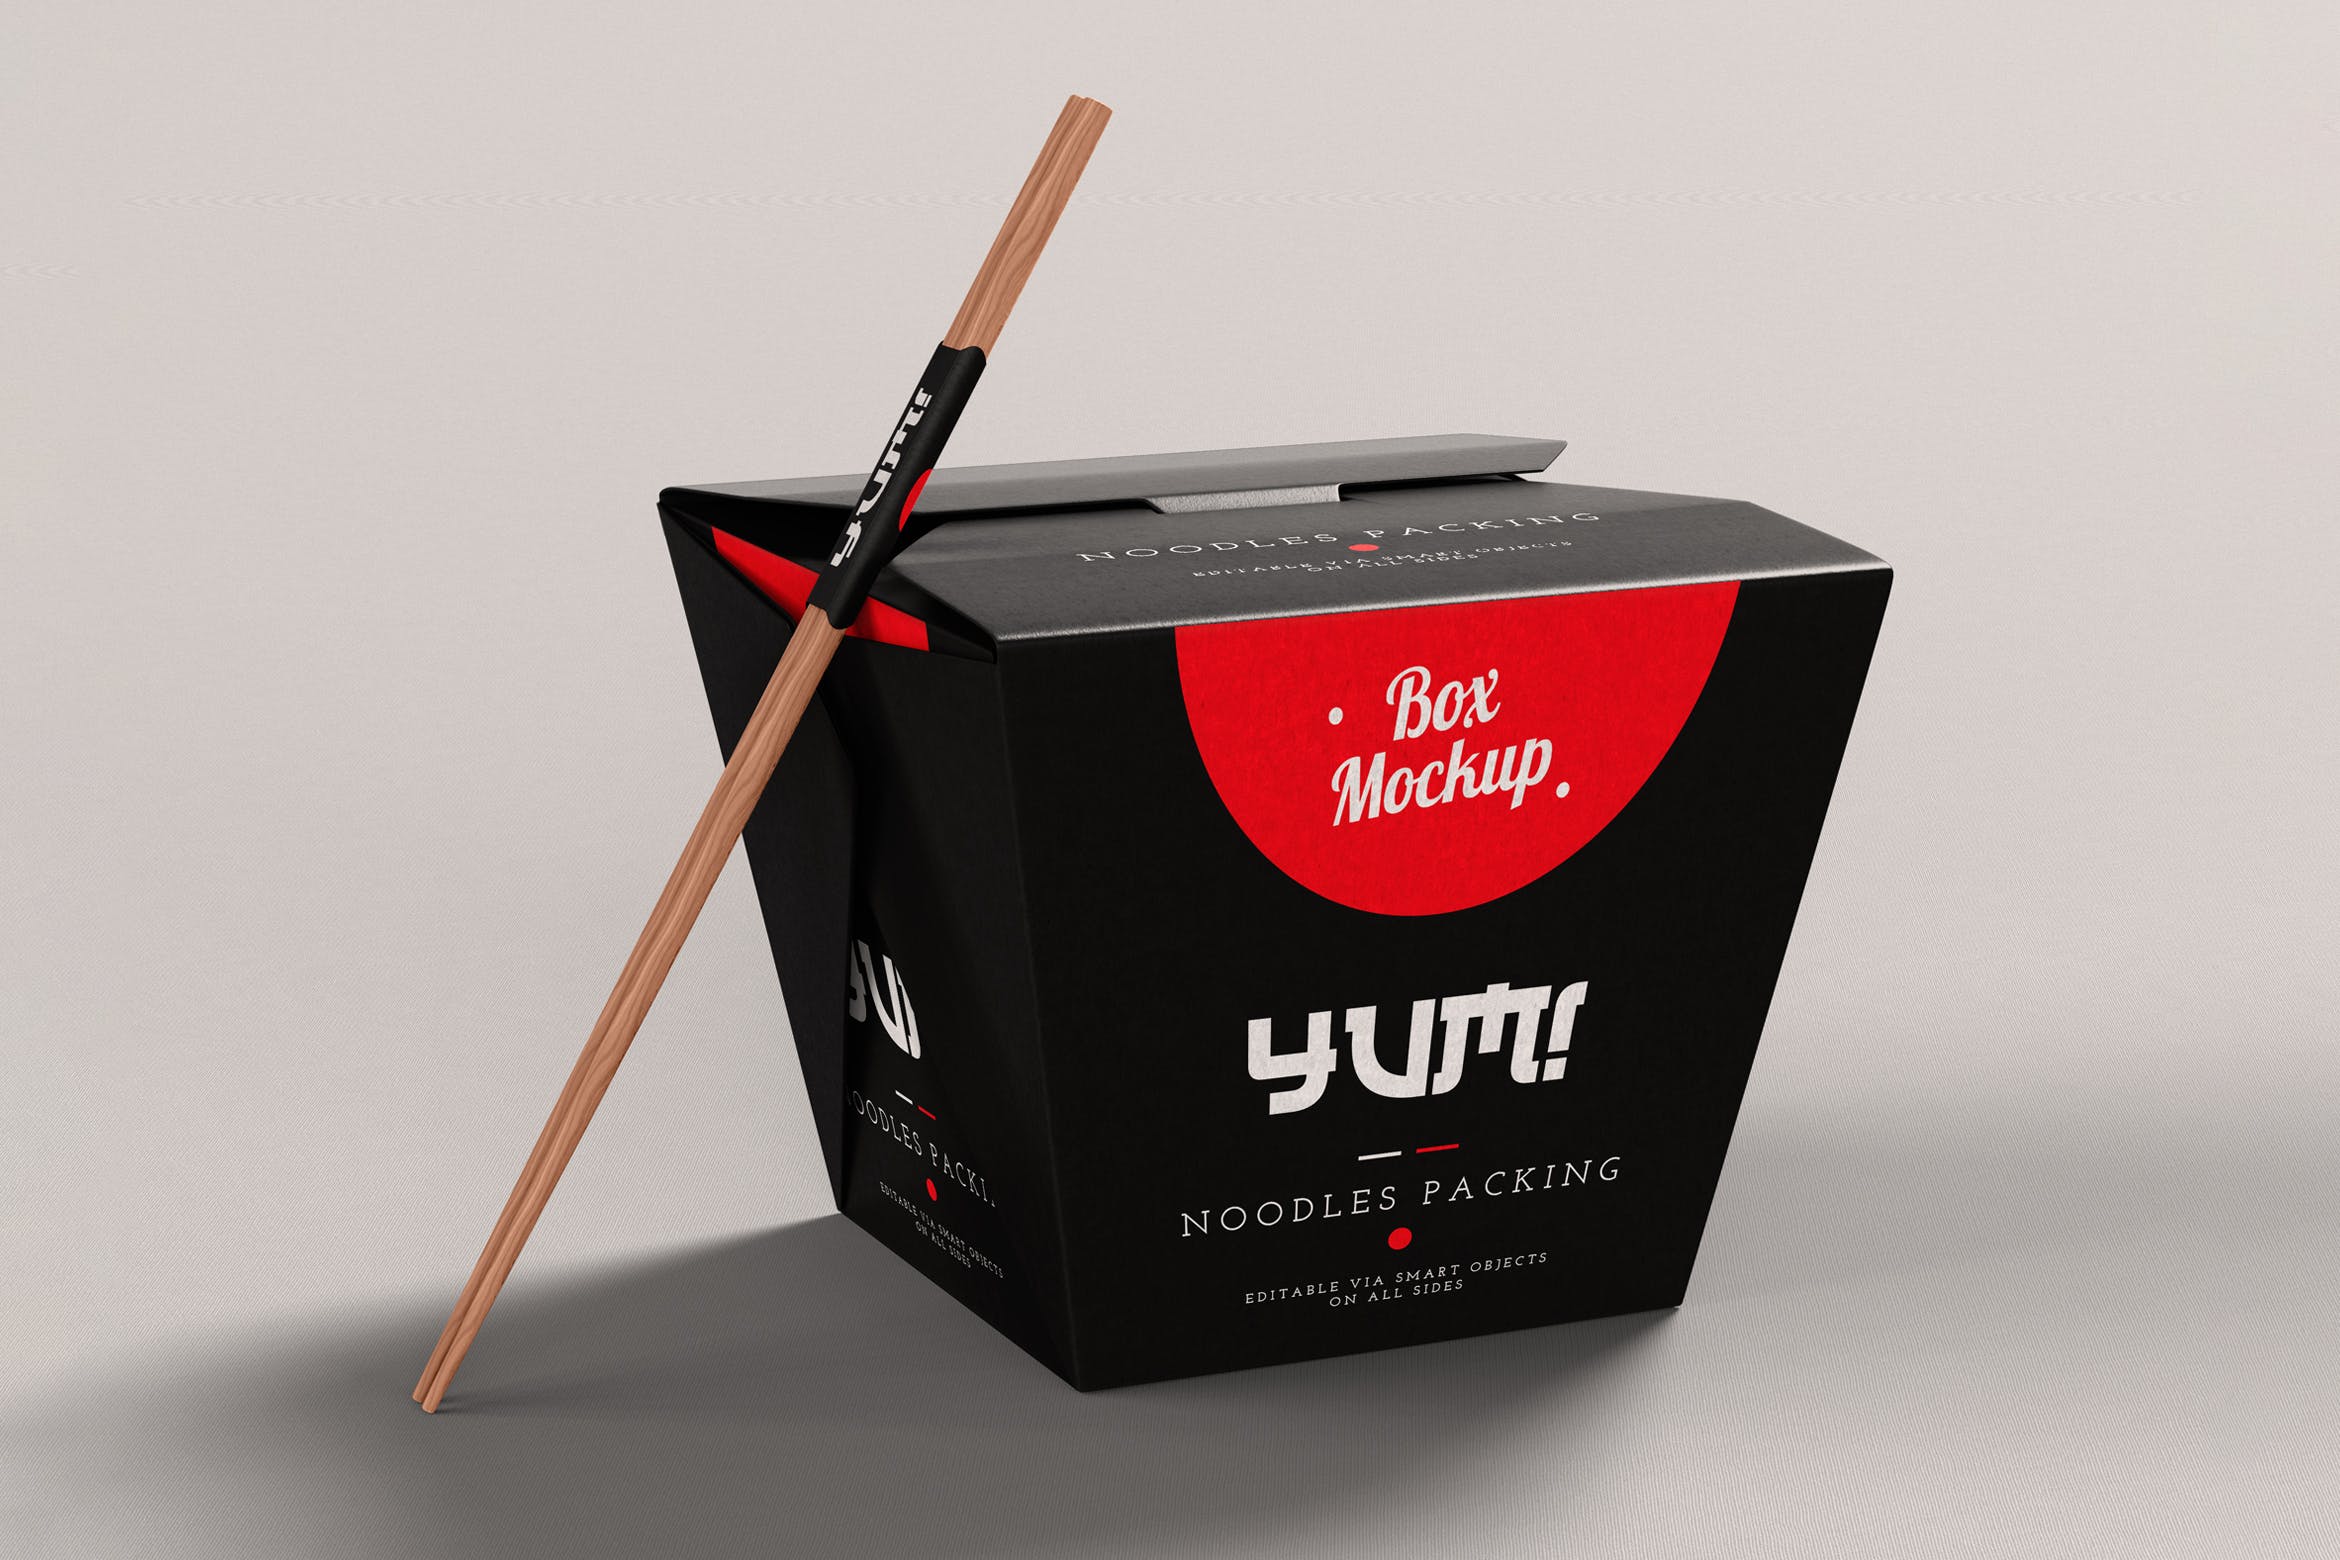 即食面条包装盒设计效果图样机模板 Noodles Pack Box Mock-Up插图